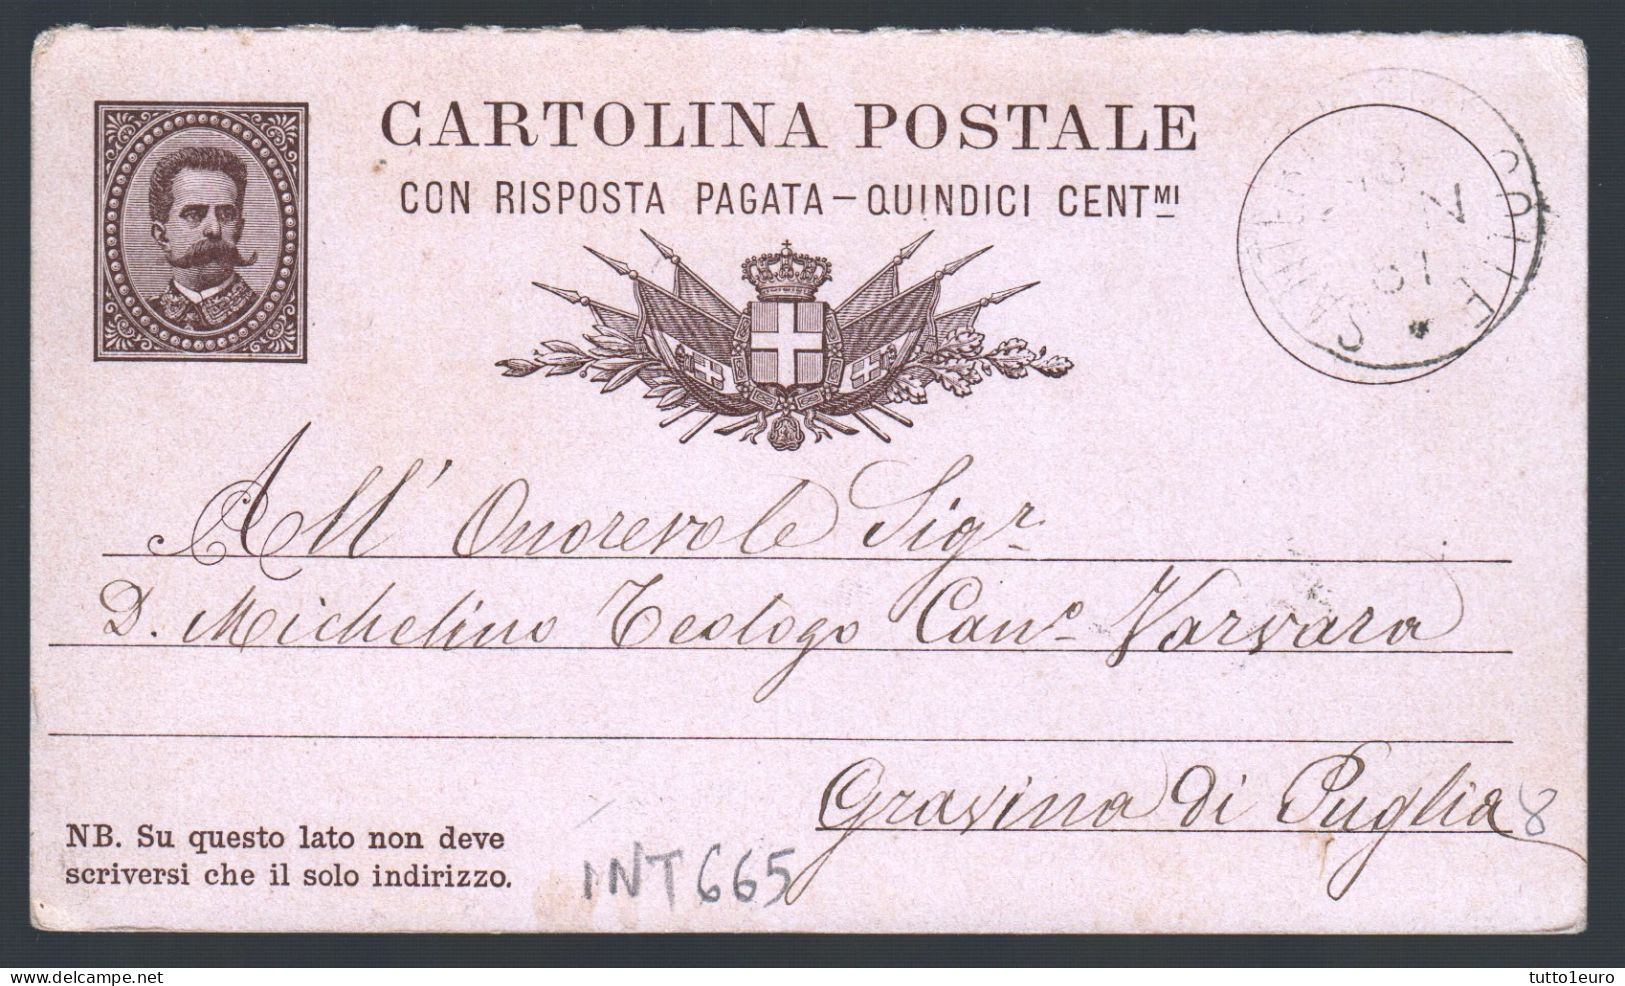 CARTOLINA POSTALE SPEDITA DA  SANTERAMO IN COLLE A GRAVINA IN PUGLIA NEL 1881 (INT665) - Entero Postal